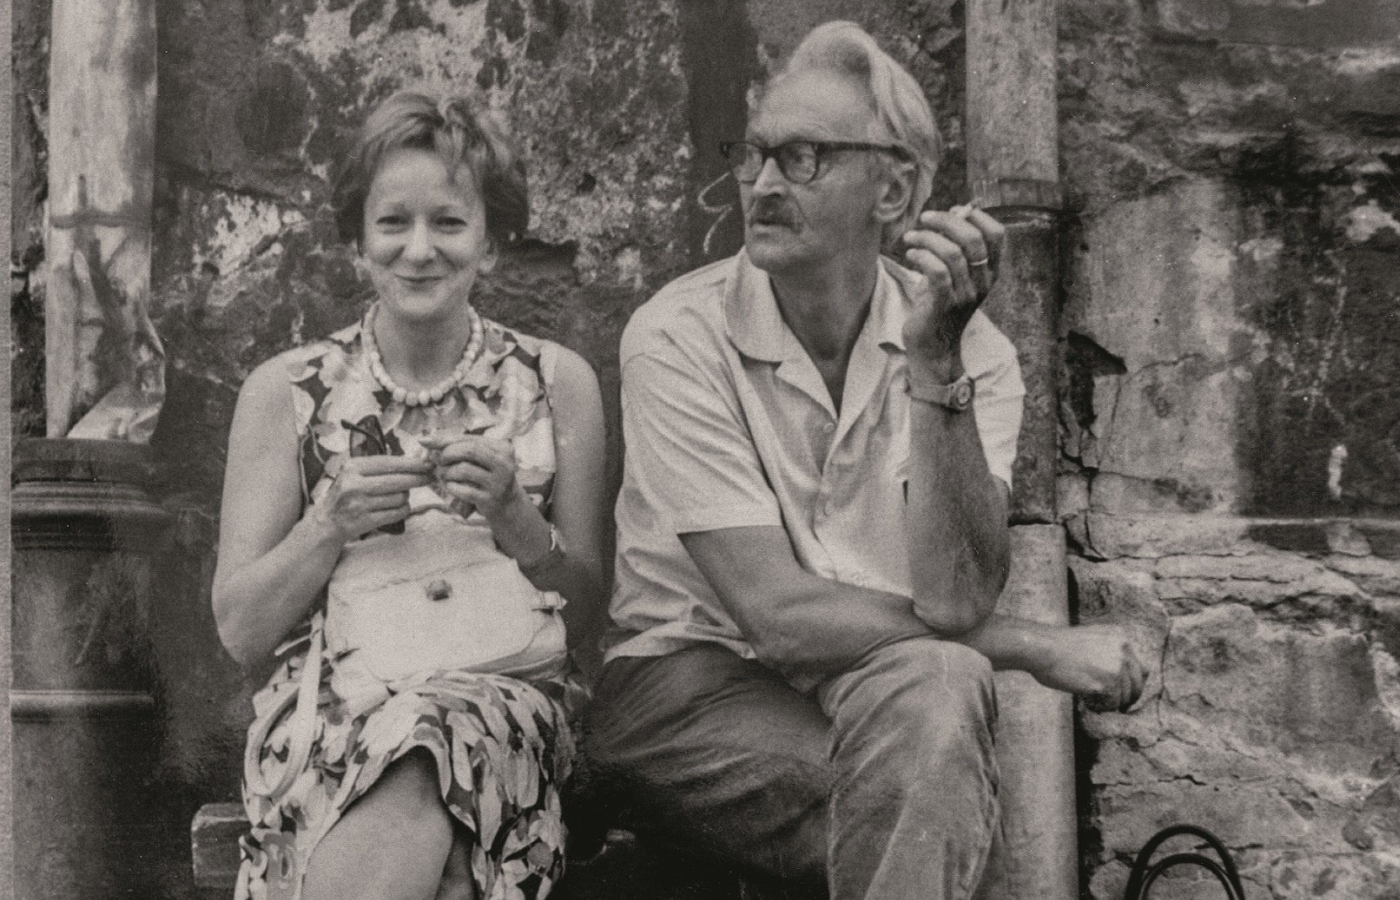 Poetka i poeta – Wisława Szymborska i Kornel Filipowicz, Kraków, lata 80. (Fot. Ewa Lipska/Fundacja im. Wisławy Szymborskiej)